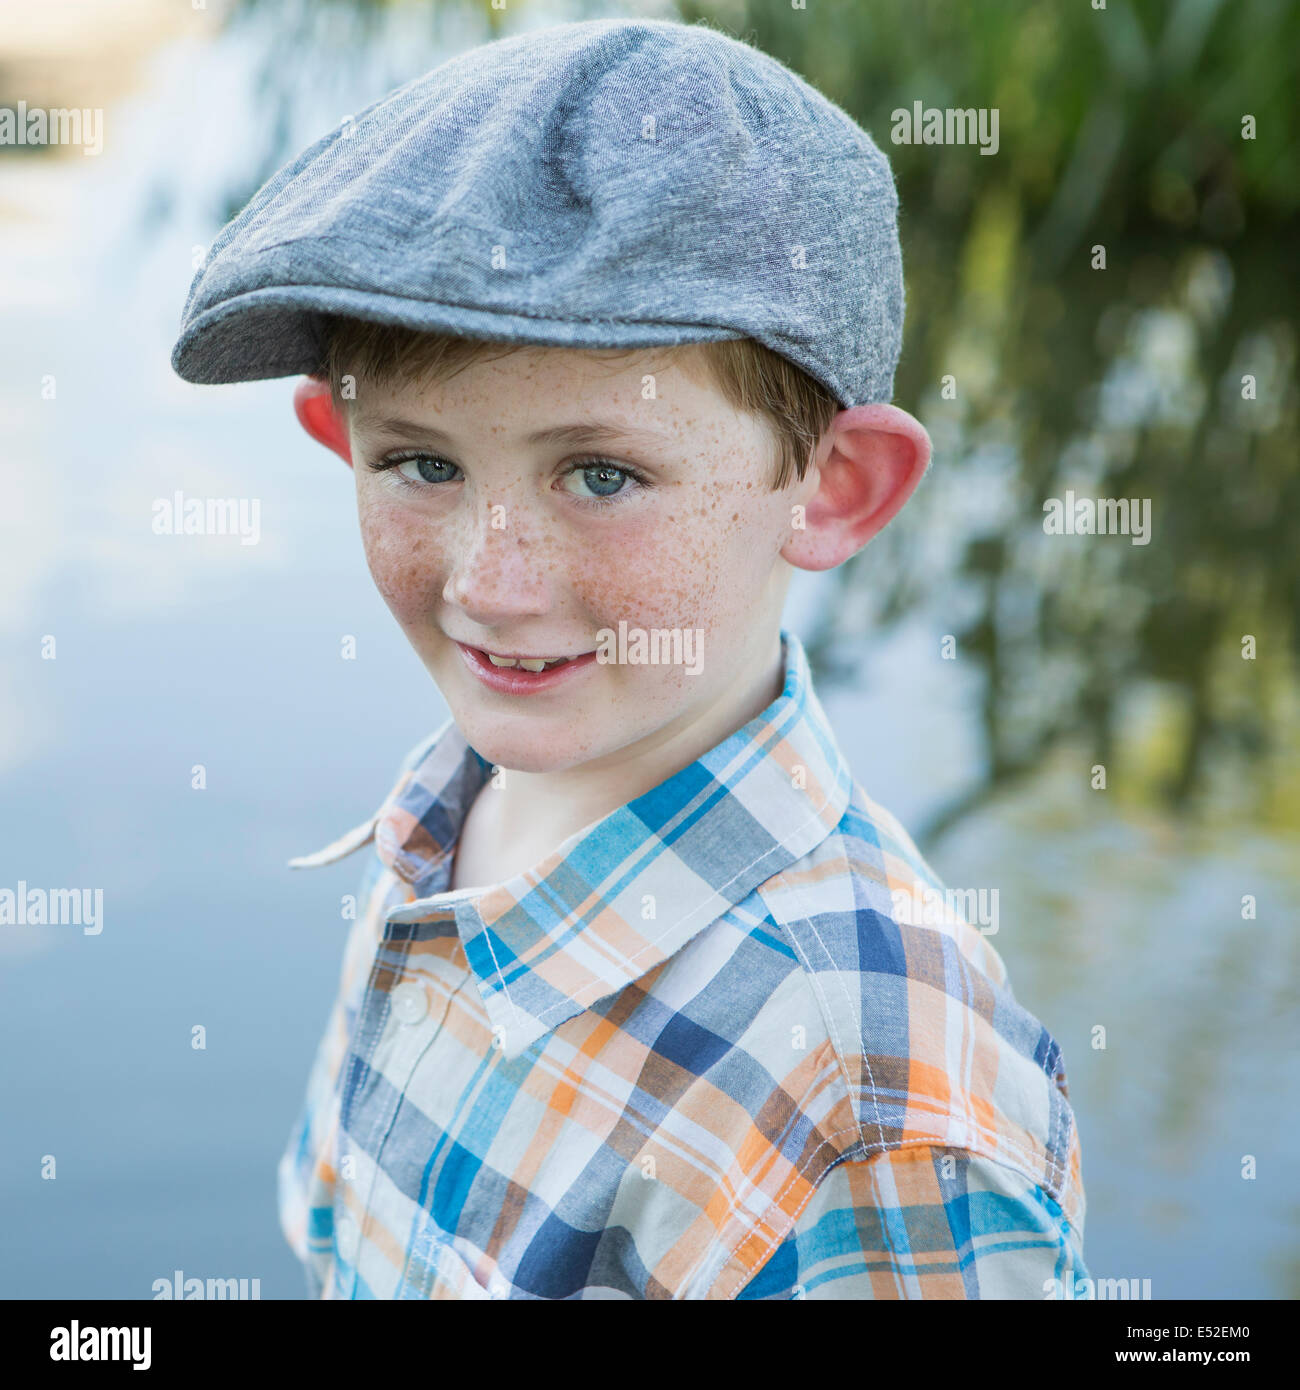 Ein kleiner Junge mit einem aufgegebenen Hemd und Tuch Mütze mit einem großen Rand stehen am Ufer eines Flusses. Stockfoto